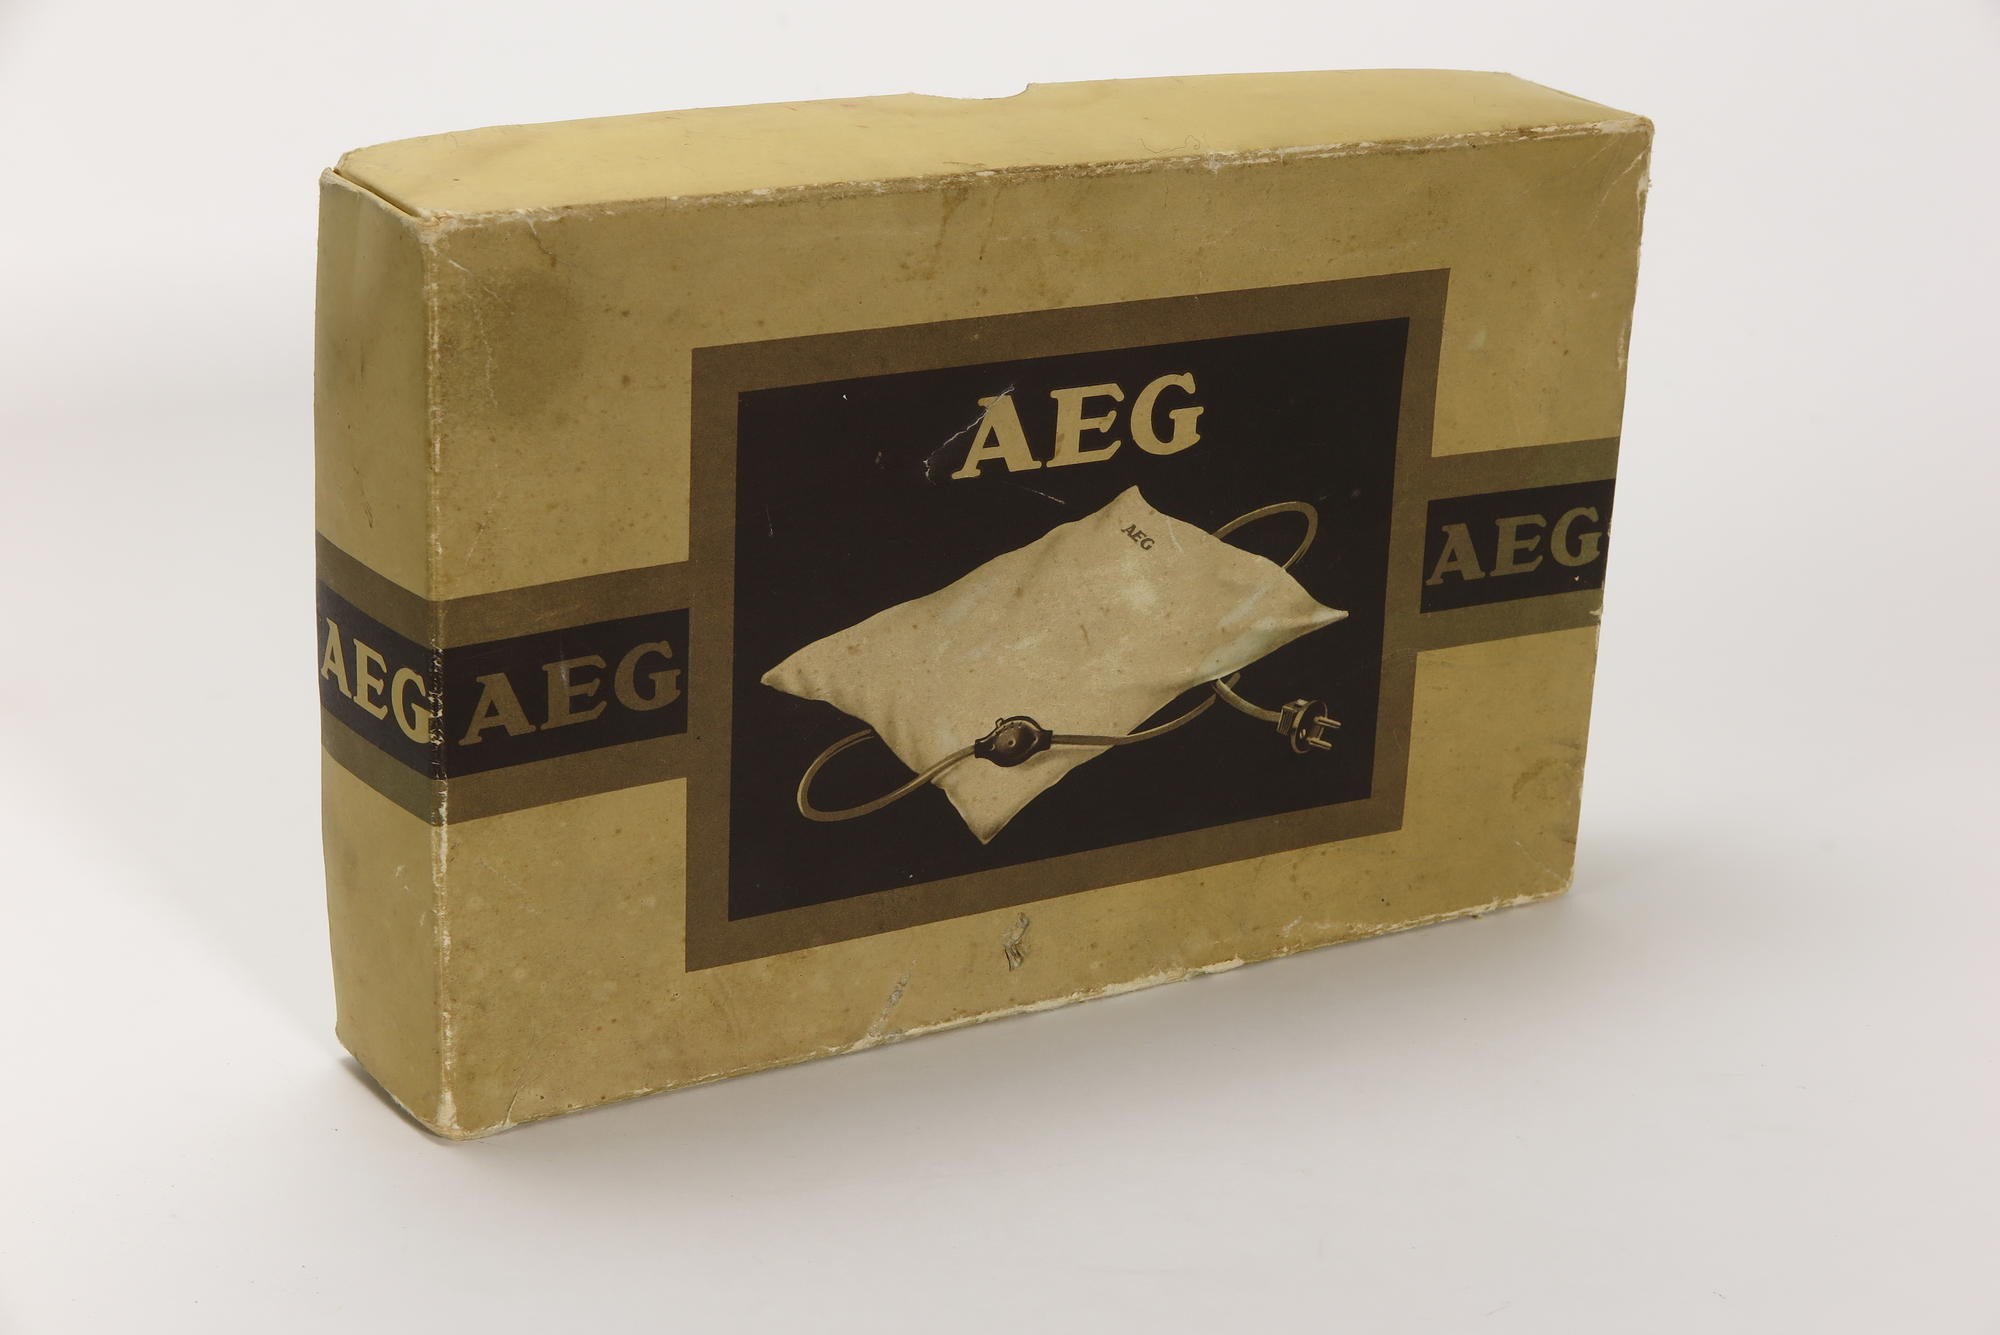 Verpackungskarton, Zubehör zu Elektrisches Heizkissen AEG (Stiftung Deutsches Technikmuseum Berlin CC0)